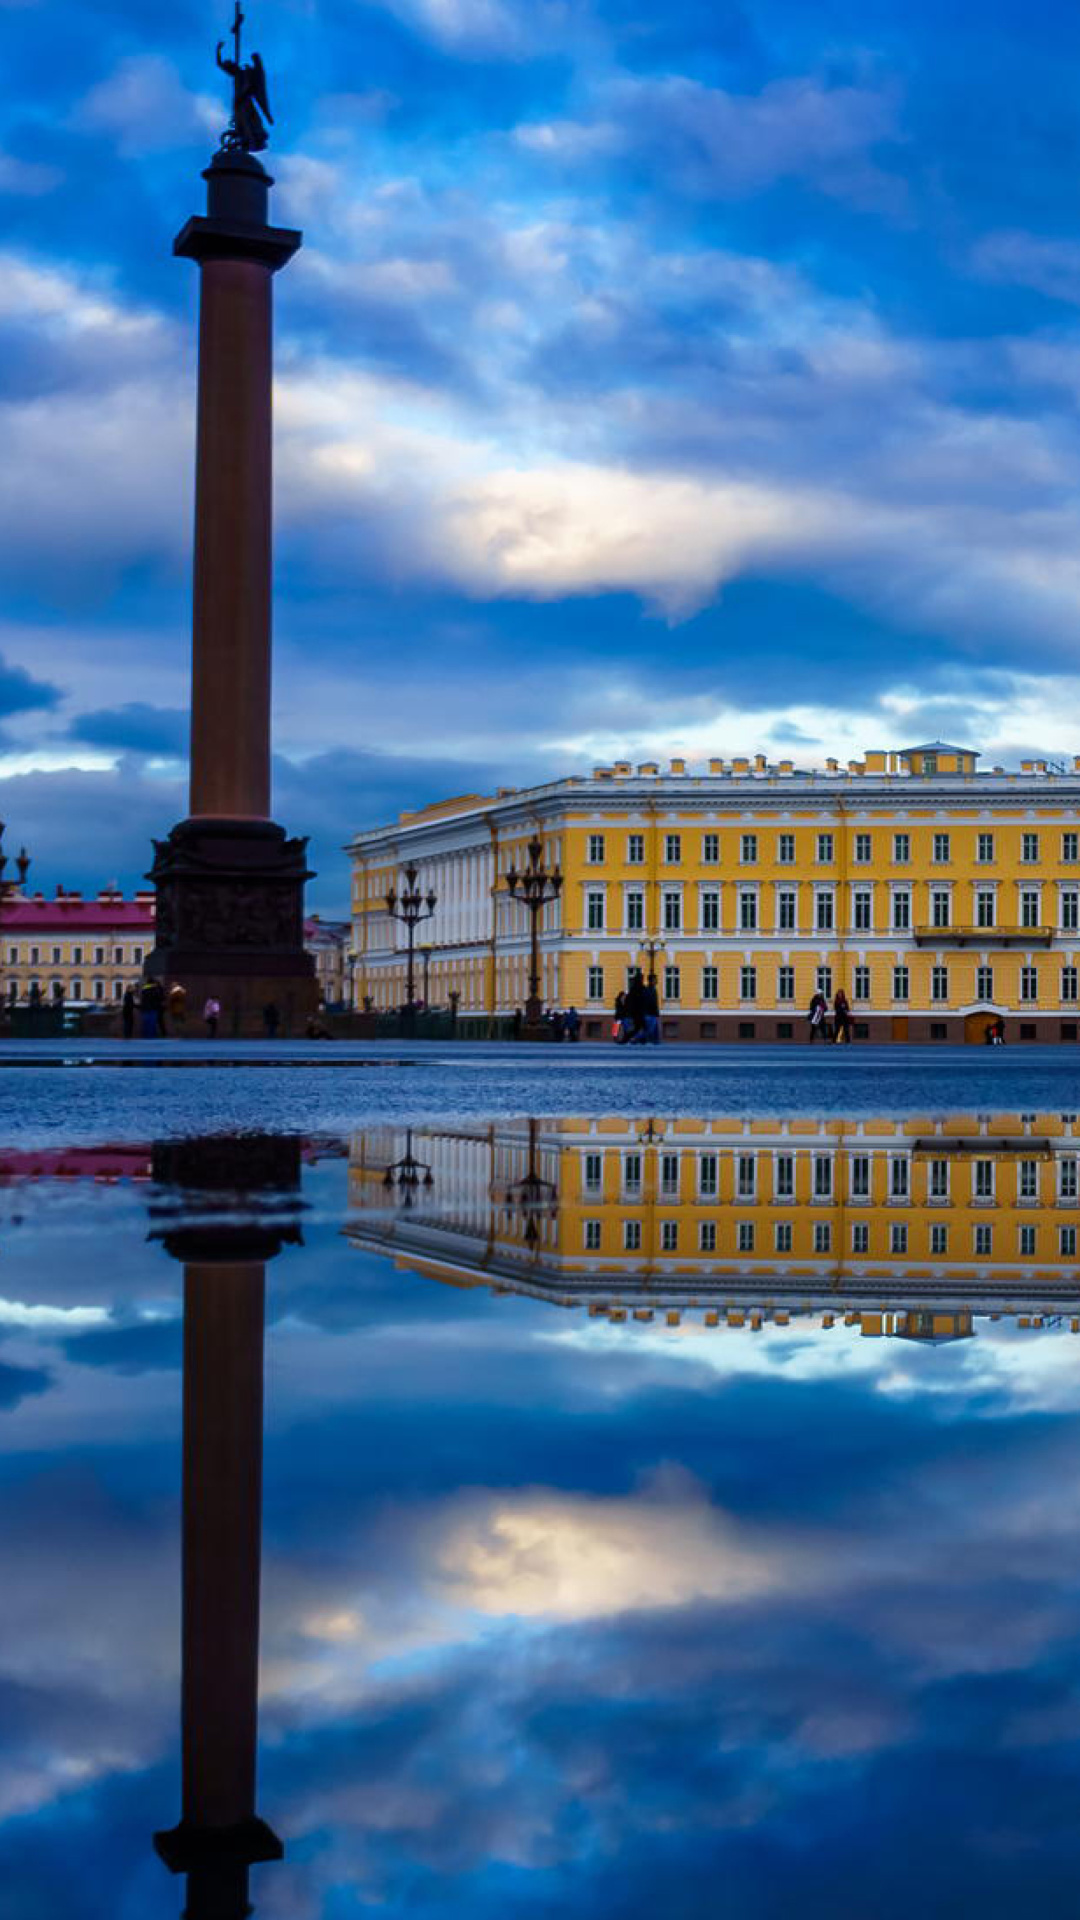 Das Saint Petersburg, Winter Palace, Alexander Column Wallpaper 1080x1920